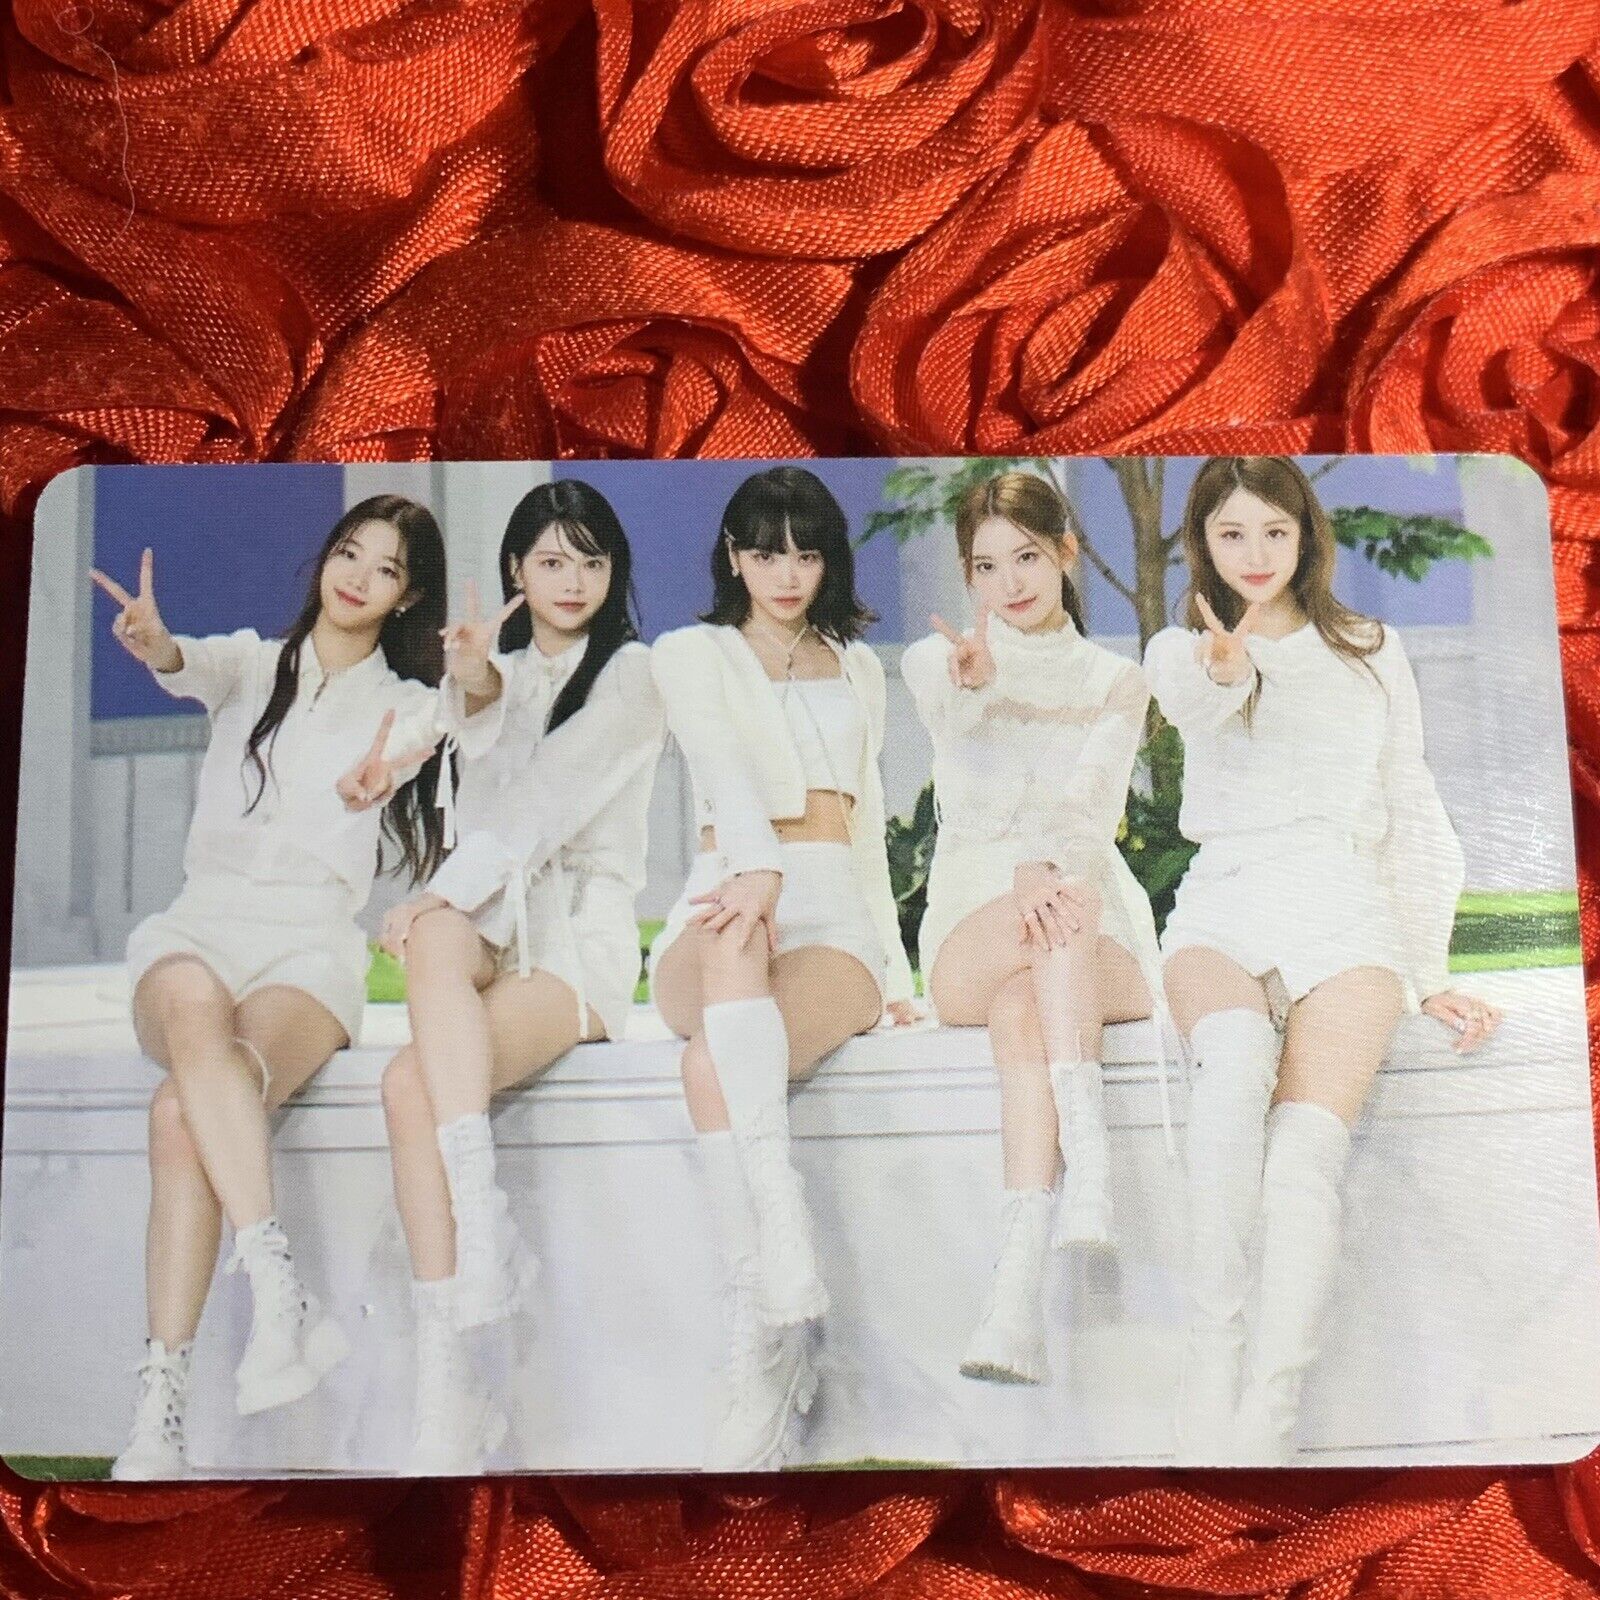 LE SSERAFIM FEAR NOT Edition Celeb K-pop Girl Photo Card Group All White